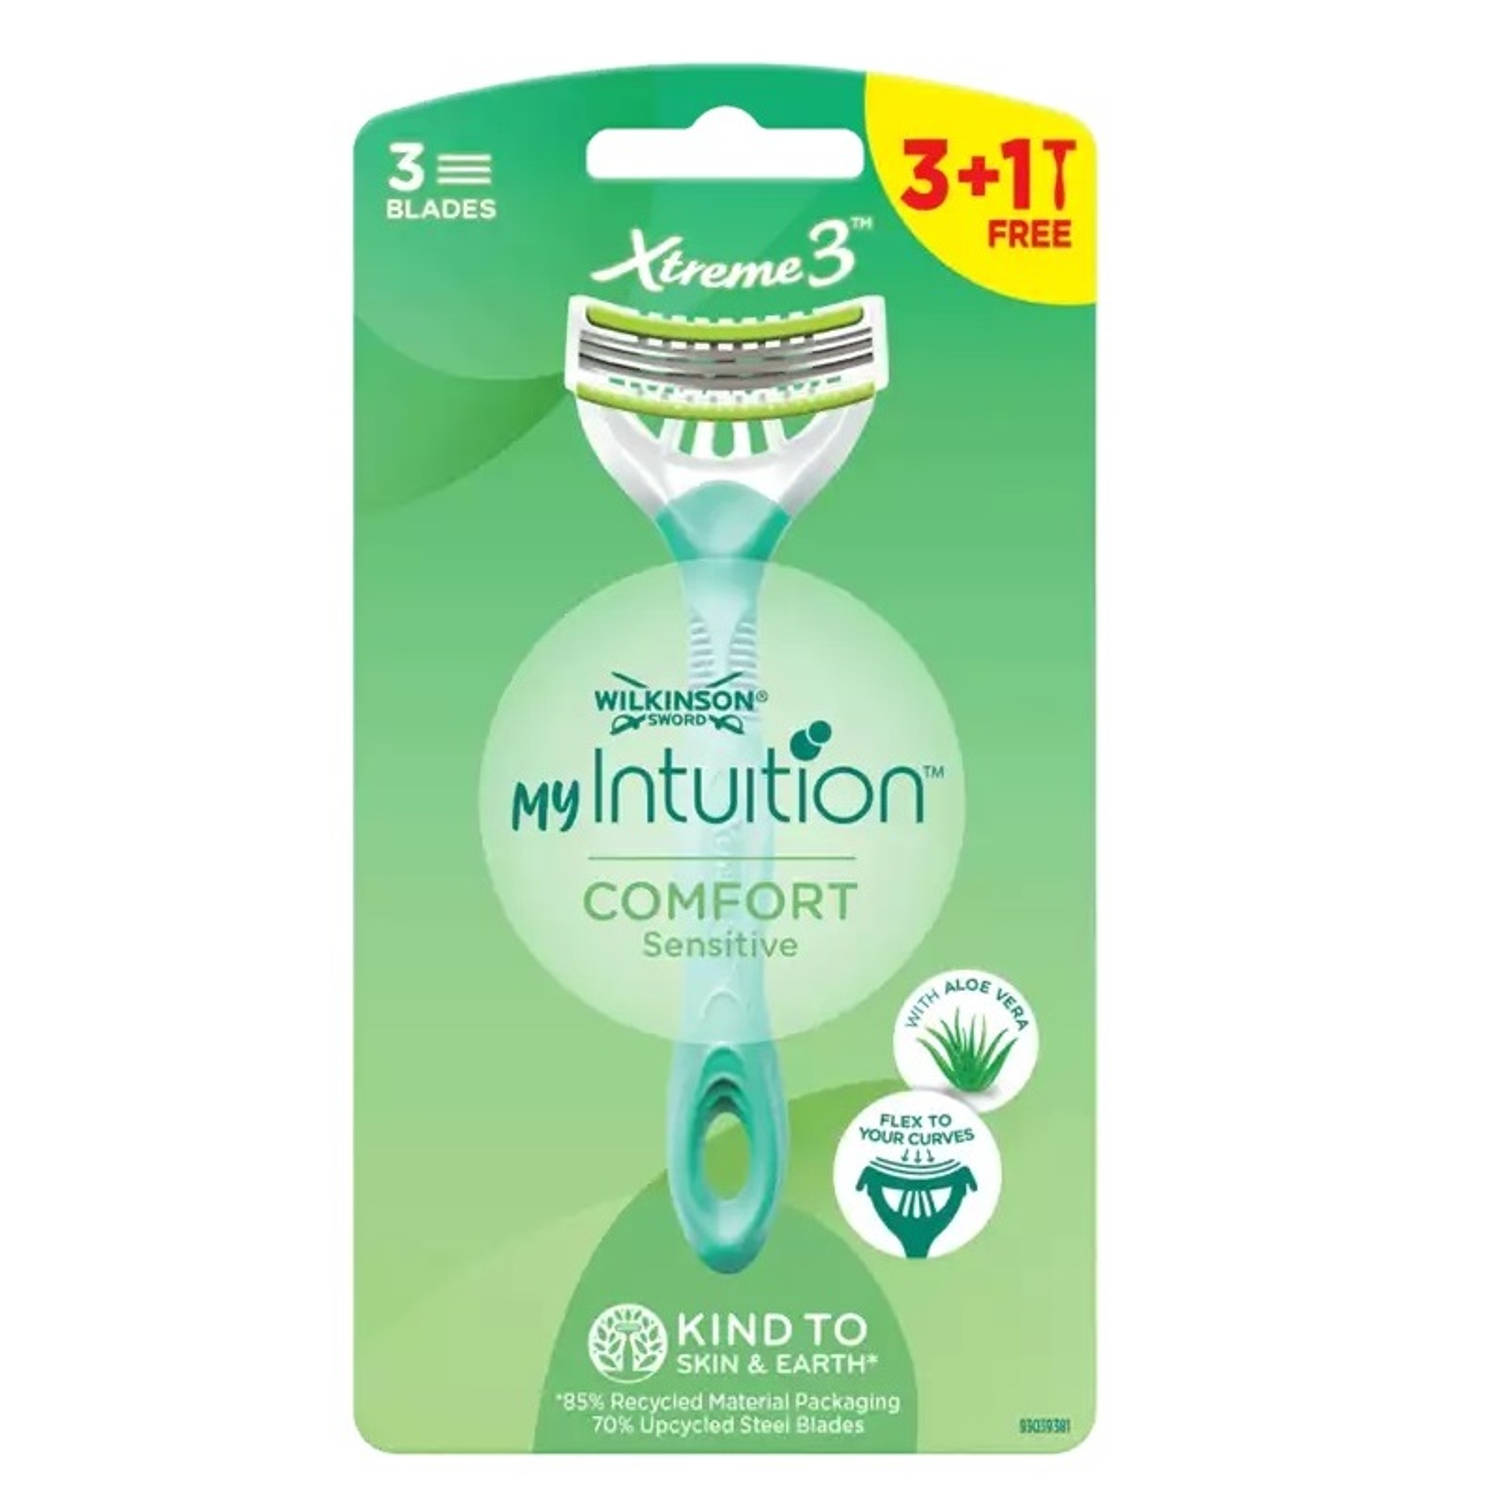 My Intuition Xtreme3 Comfort Sensitive wegwerpscheermesjes voor vrouwen 4st